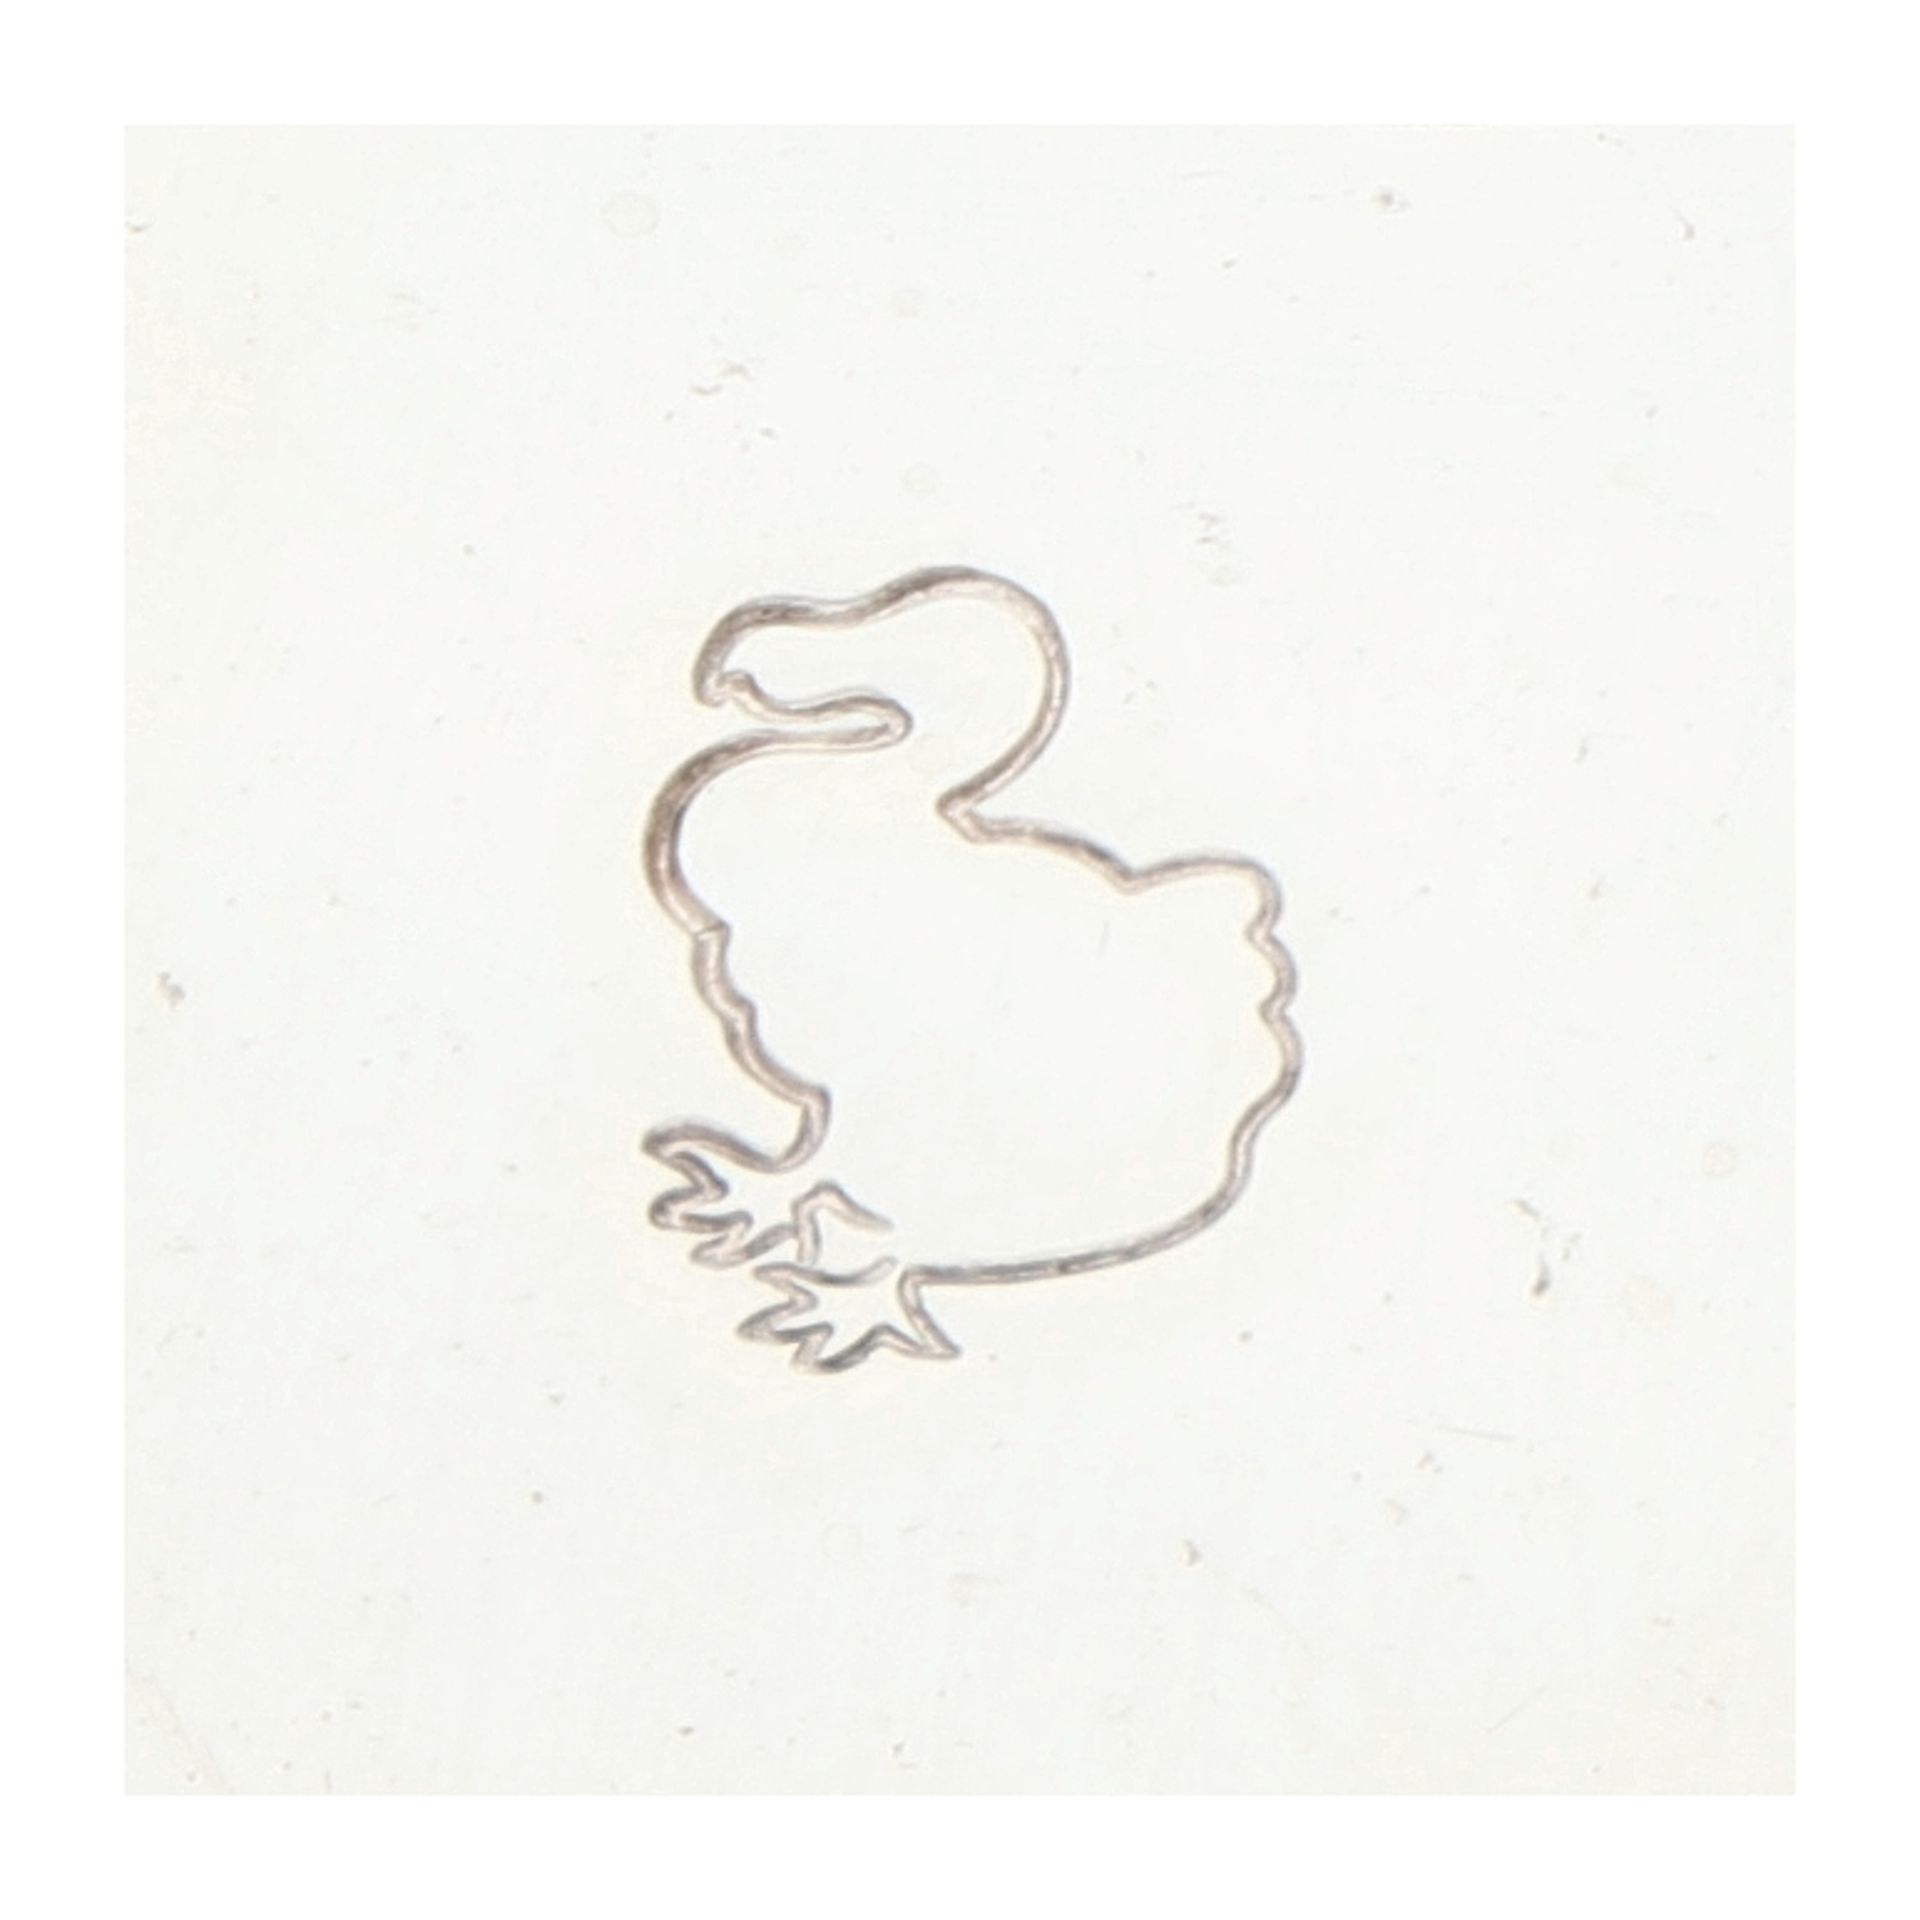 No Reserve - Pomellato Sterling silver Dodo cross pendant. - Image 3 of 4